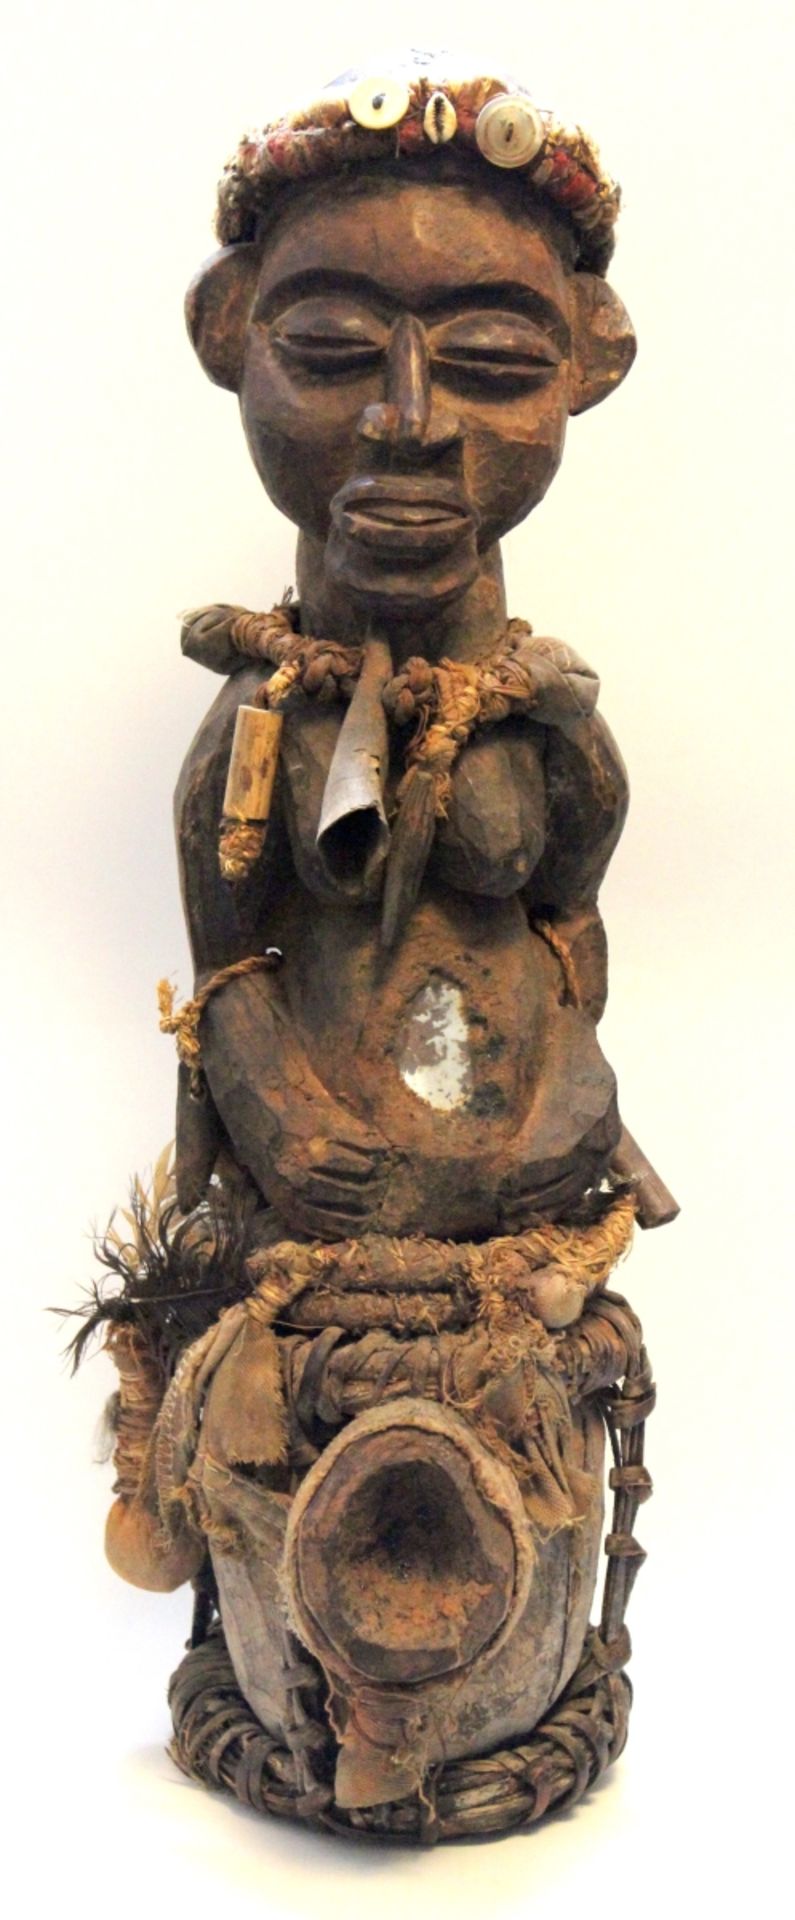 Afrikafigur wohl Fetischfigur/Voodoo, Holz reich verziert mit Bast, Stoff, Glas, Knochen und